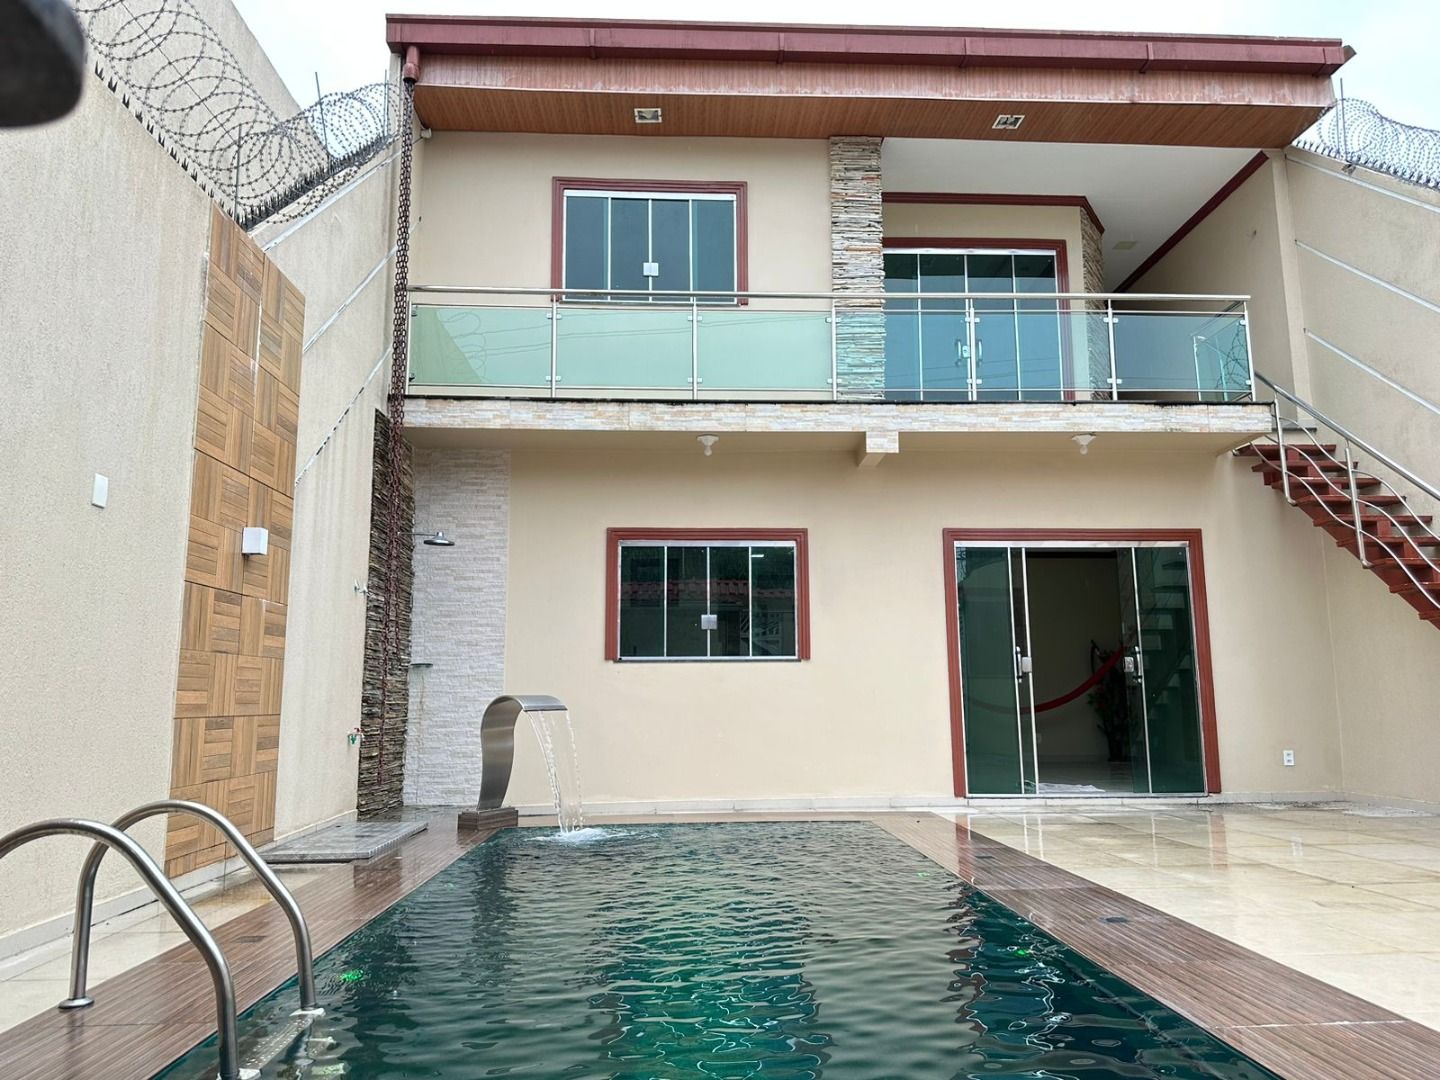 Casa com 5 dormitórios sendo 3 suites à venda, 350 m² por RS 650.000 - Flores - Manaus-AM - Nao Fina